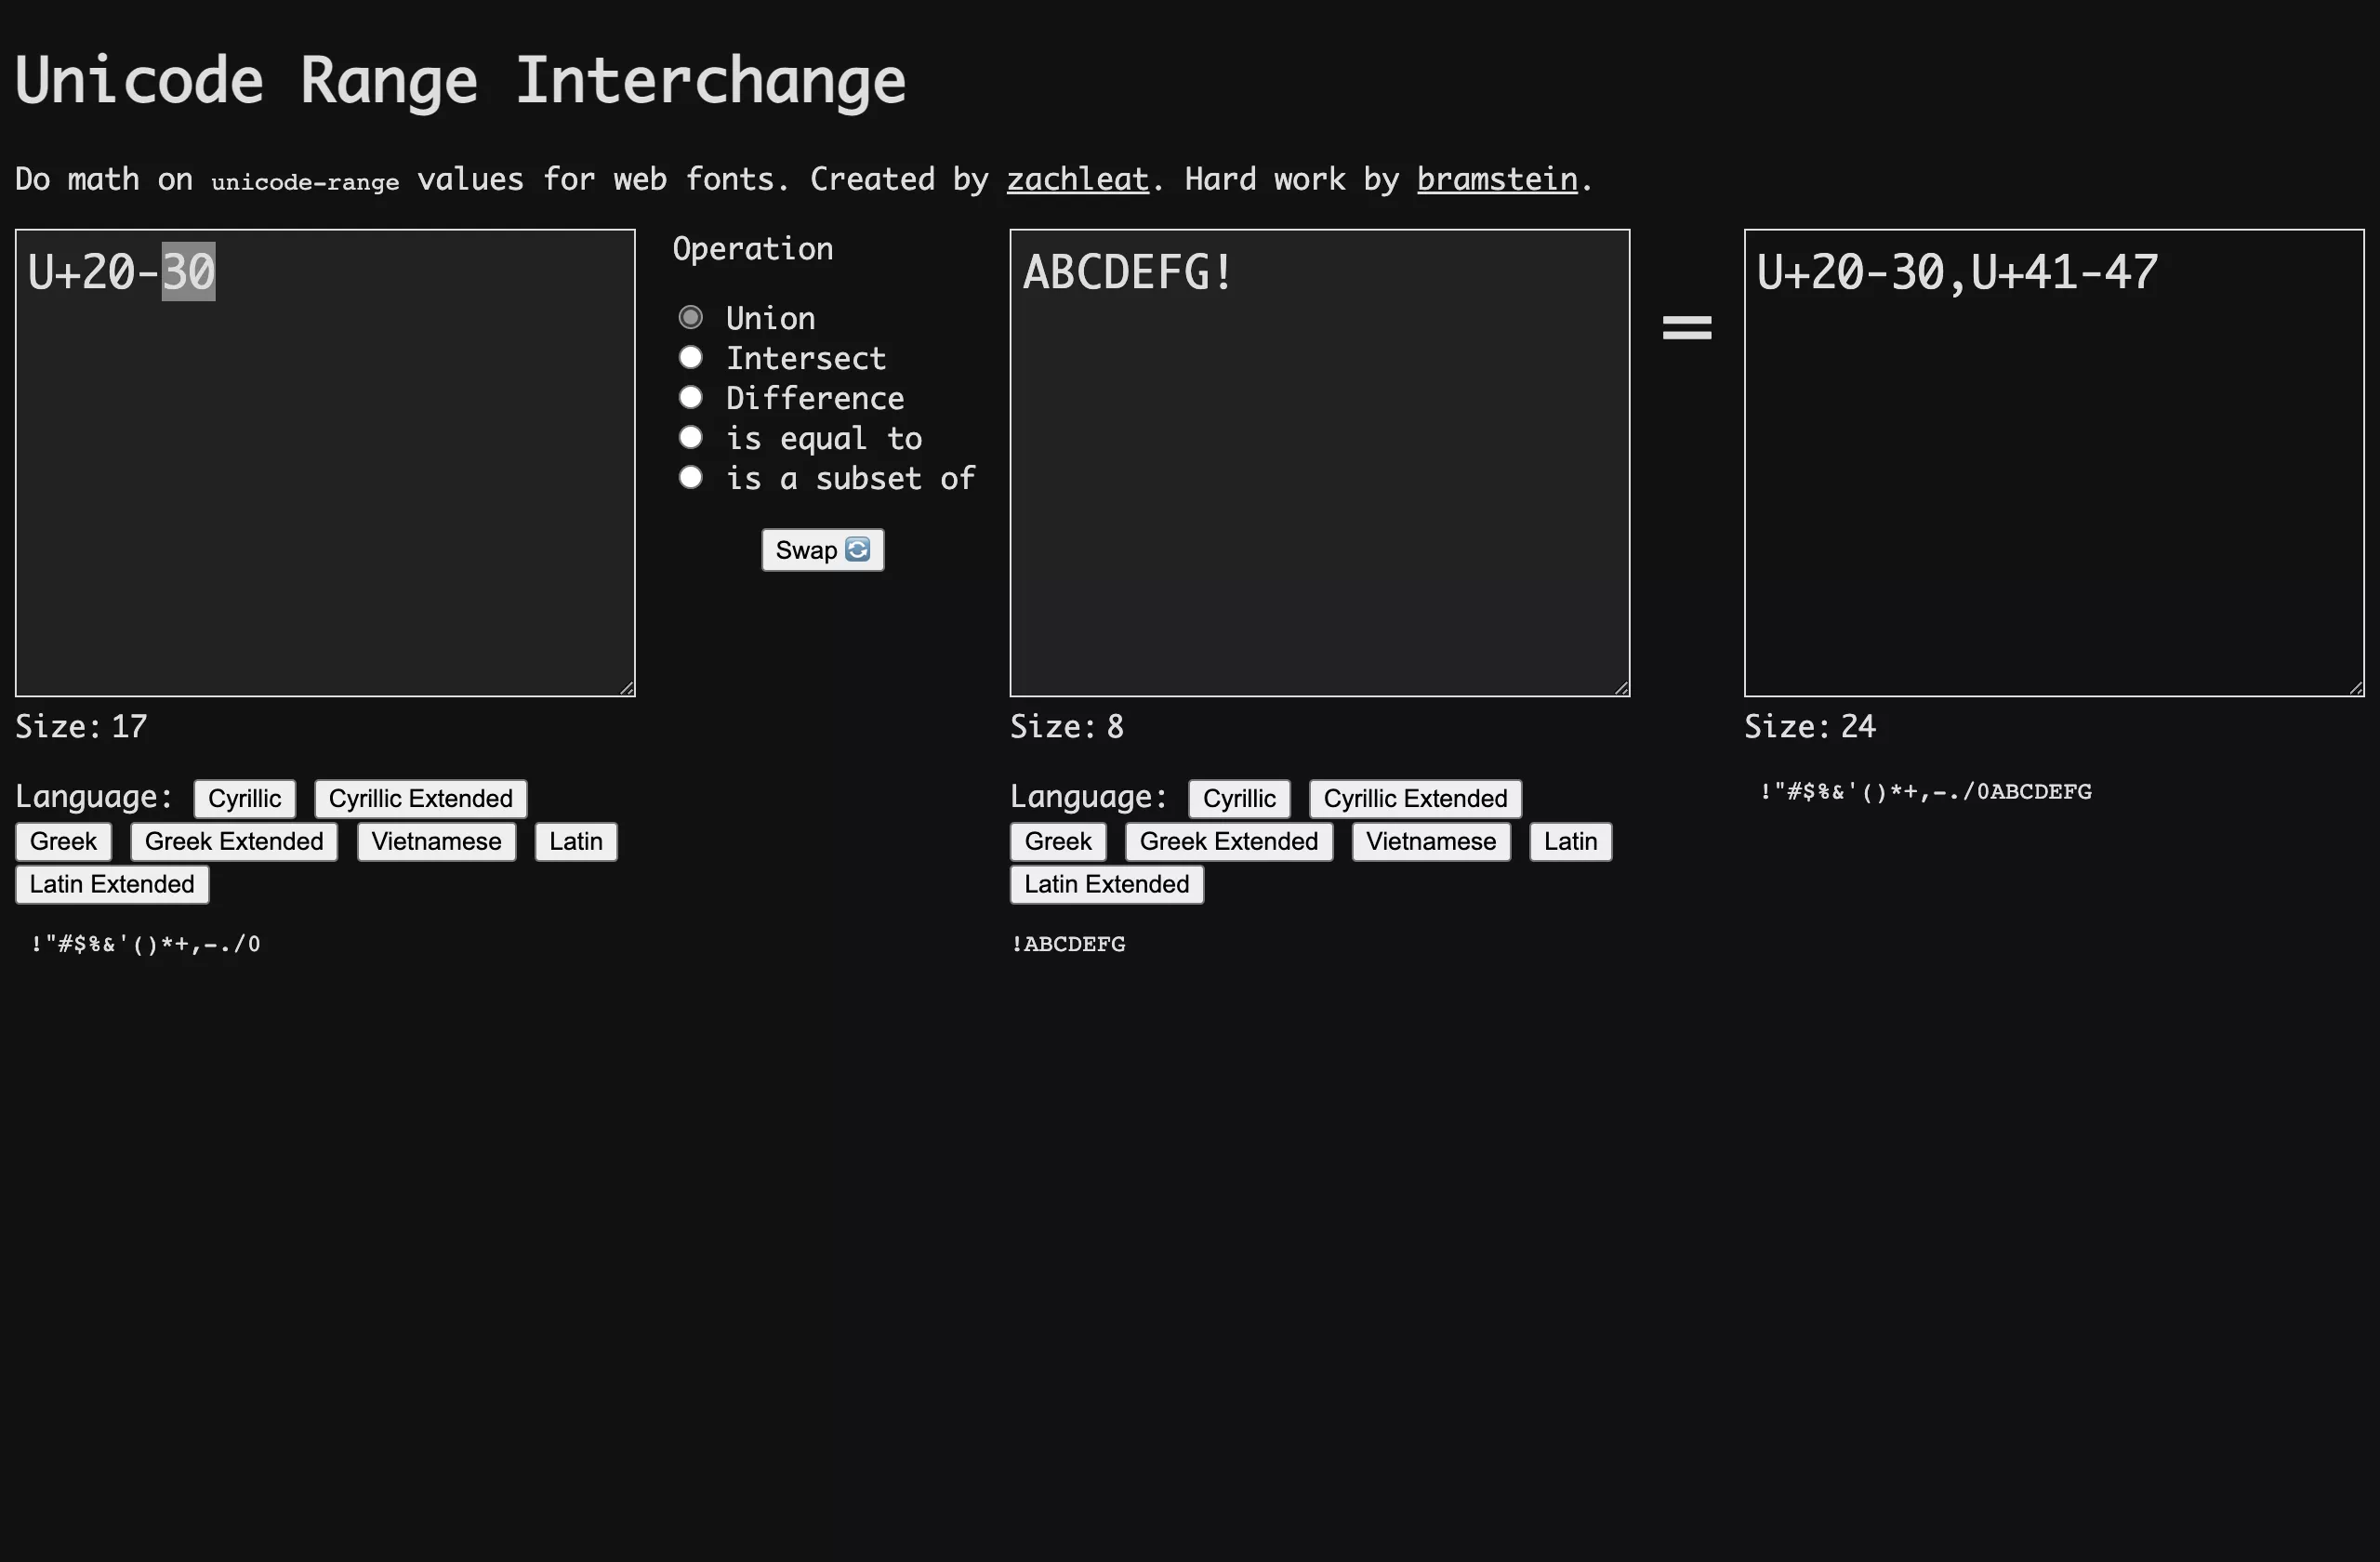 Unicode Range Interchange